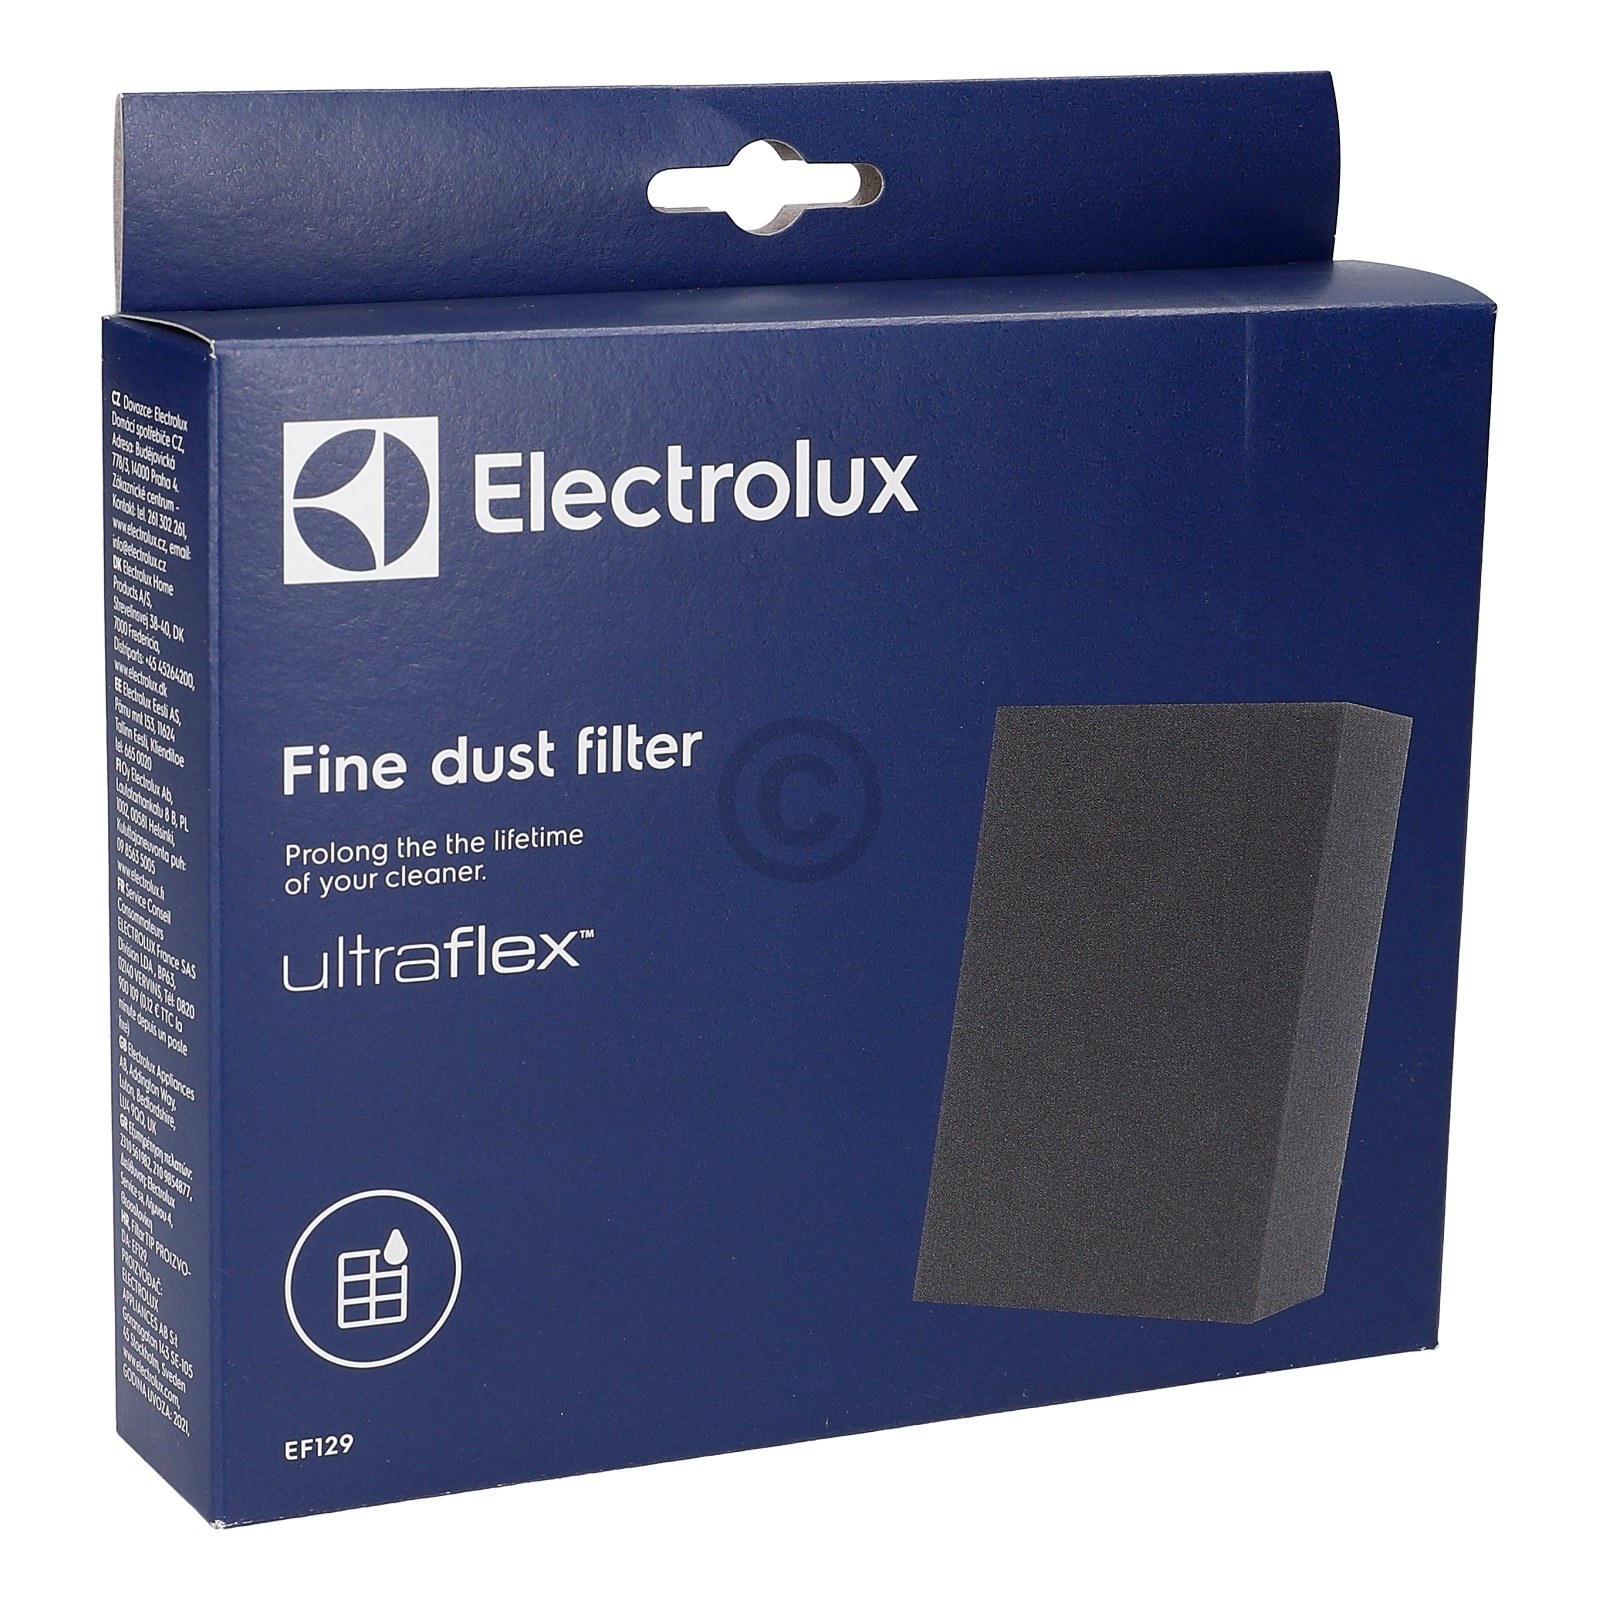 Schaumstofffilter Electrolux EF129 900167649/4 für Staubsauger UltraFlex